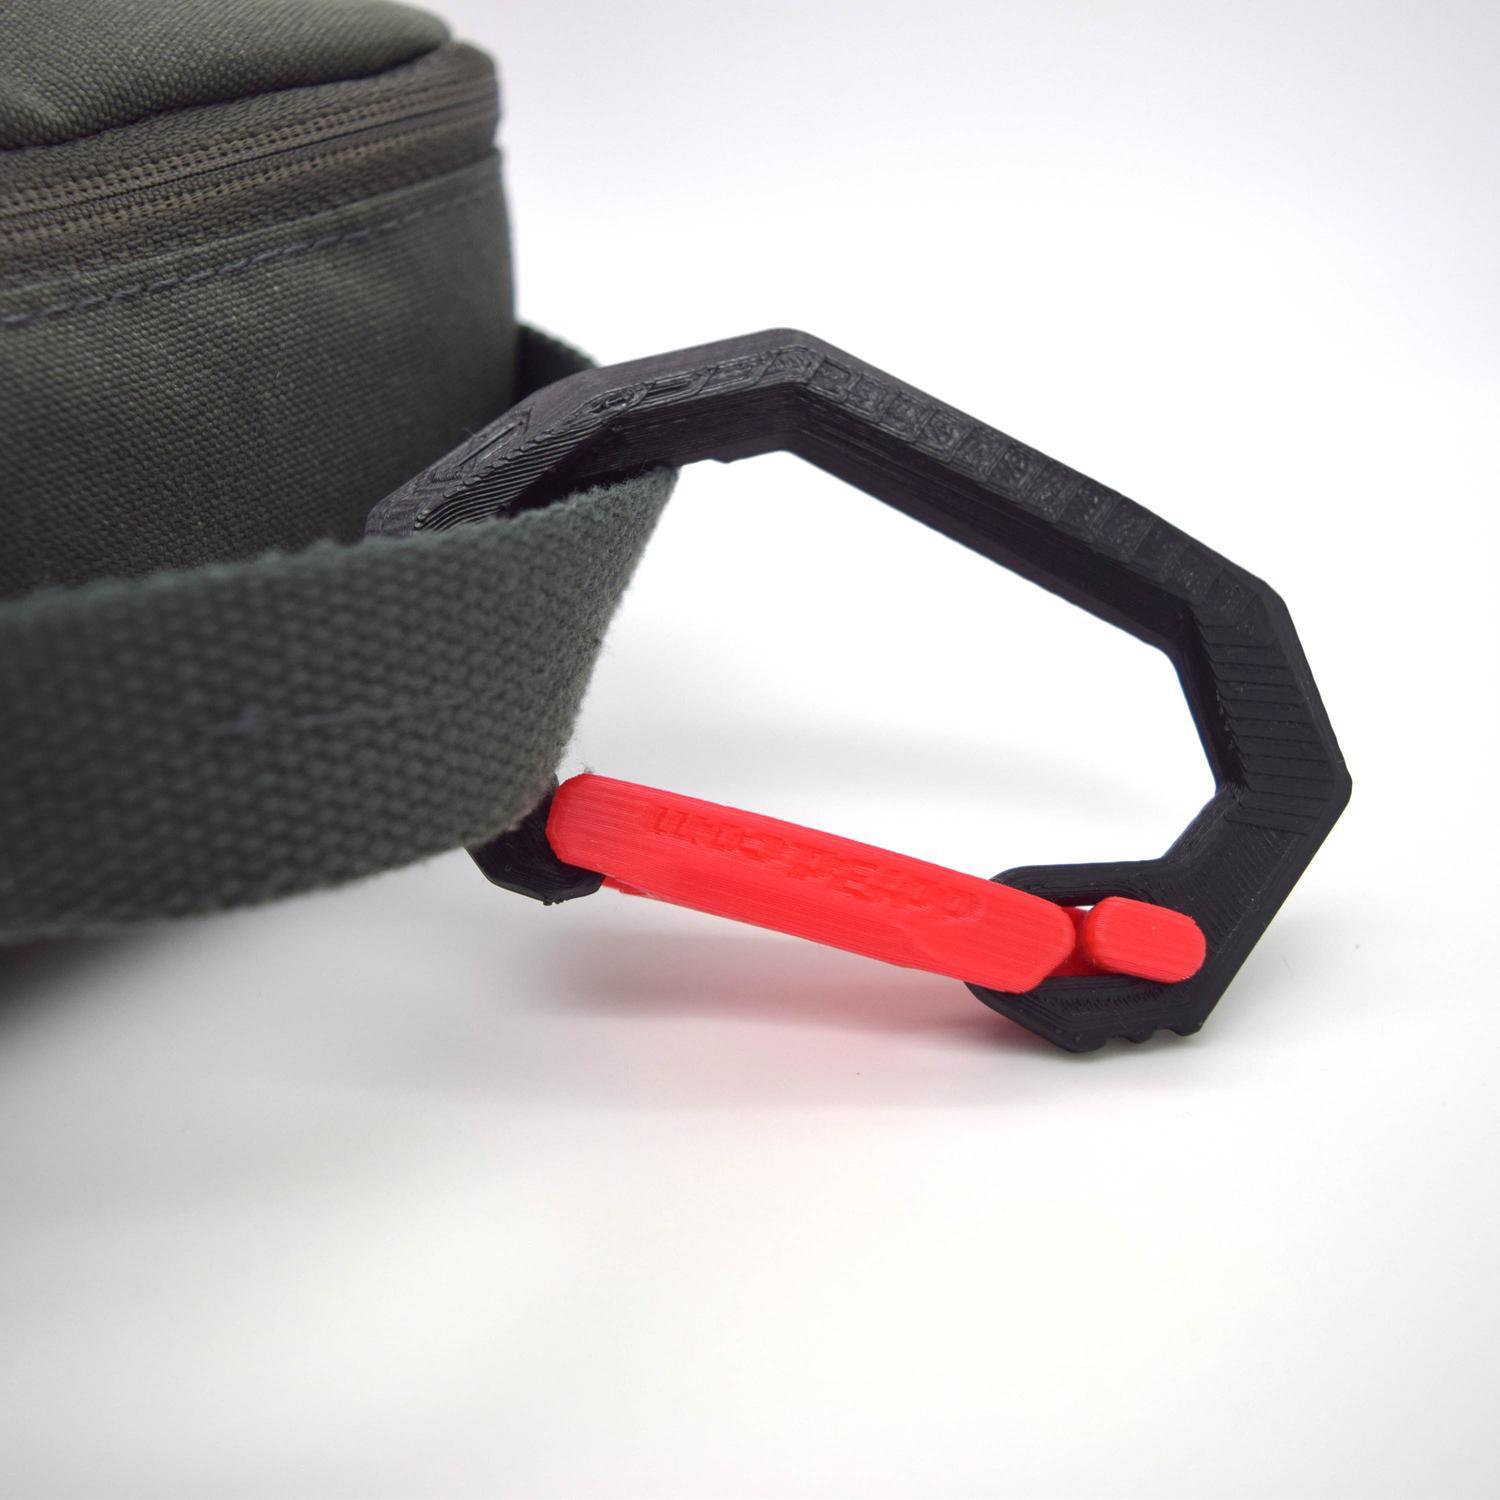 Carabiner plastic hook for backpack, stroller, baby bag etc